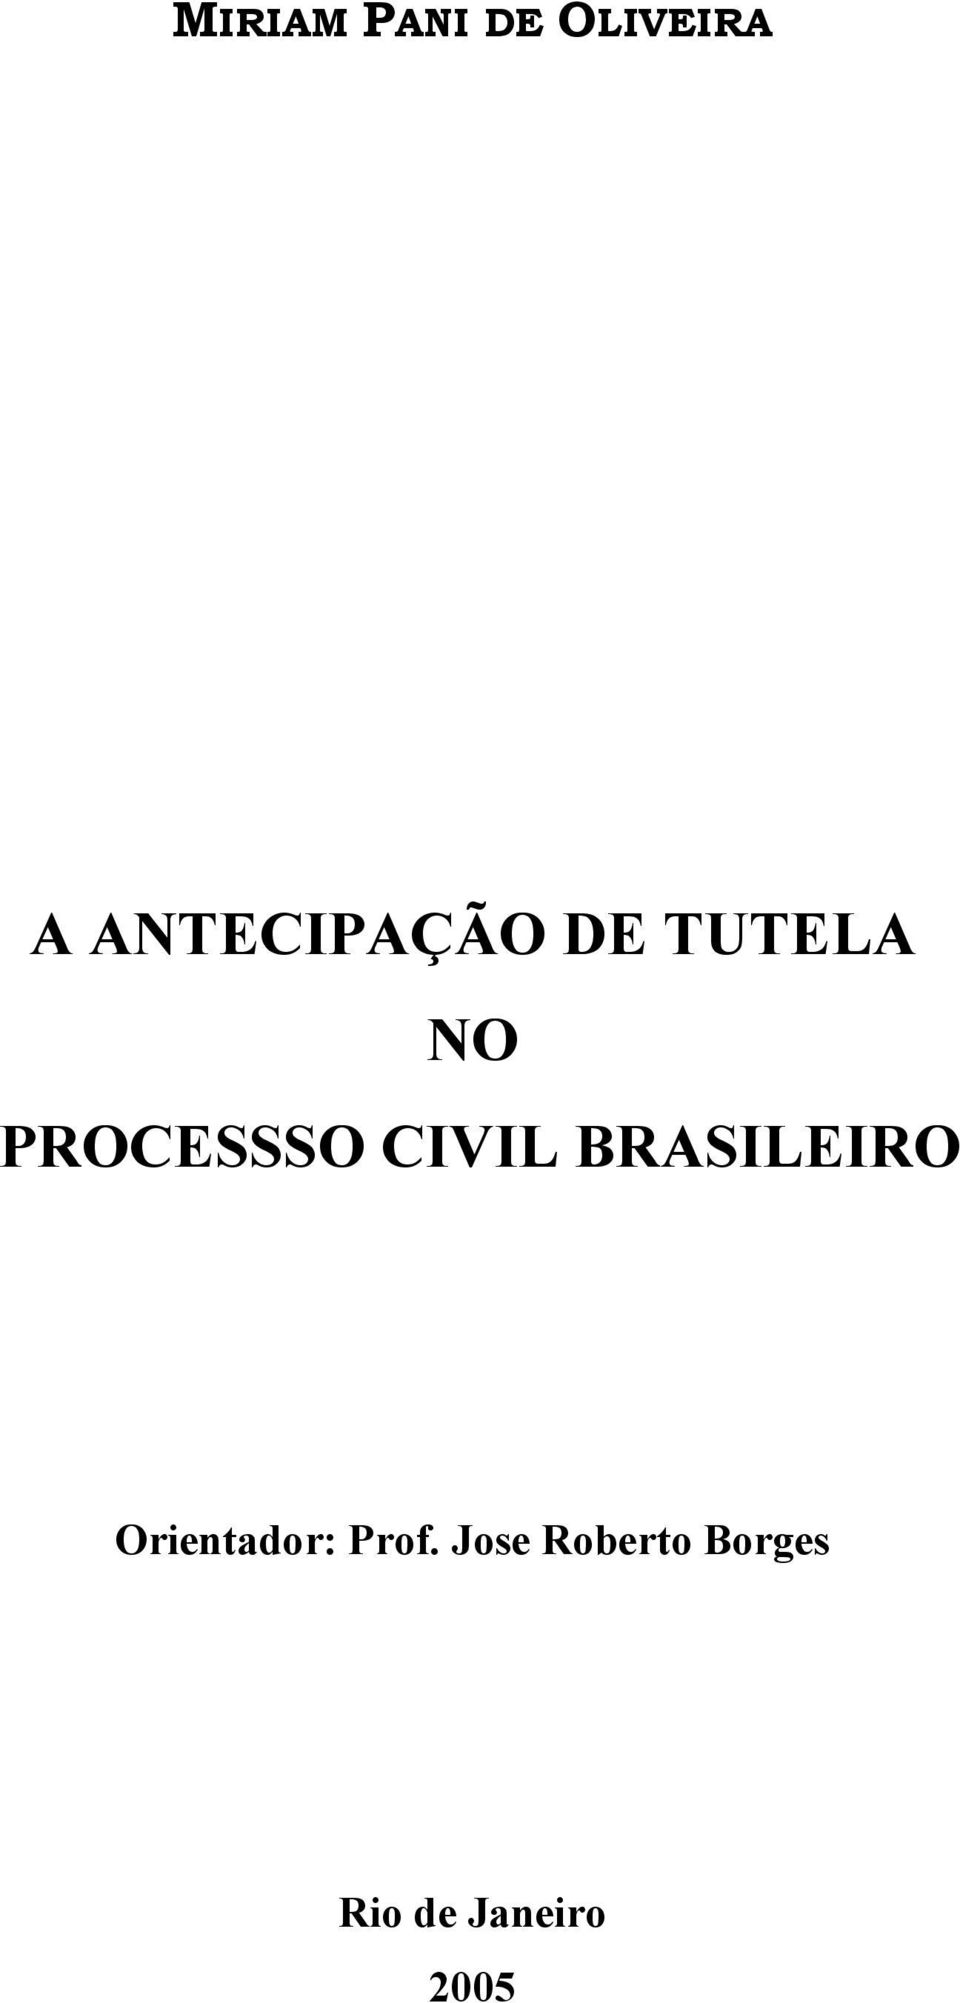 PROCESSSO CIVIL BRASILEIRO